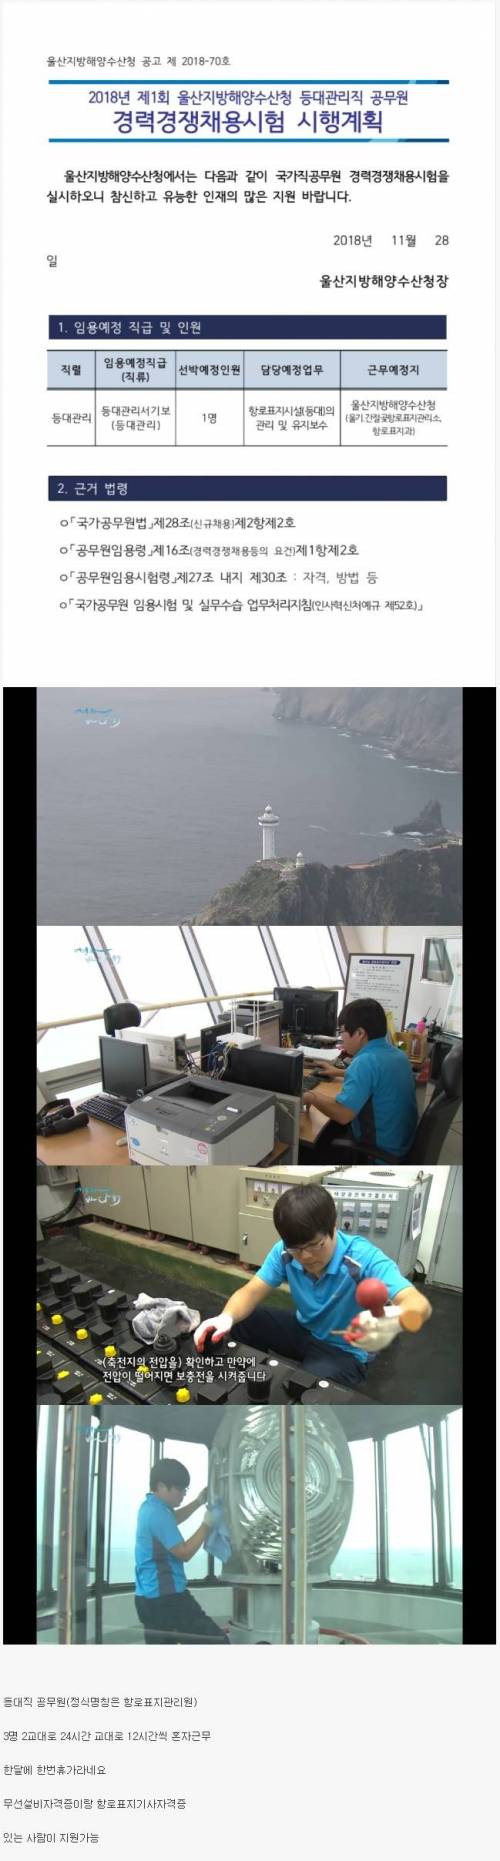 대한민국에서 가장 고독한 공무원 원탑.jpg